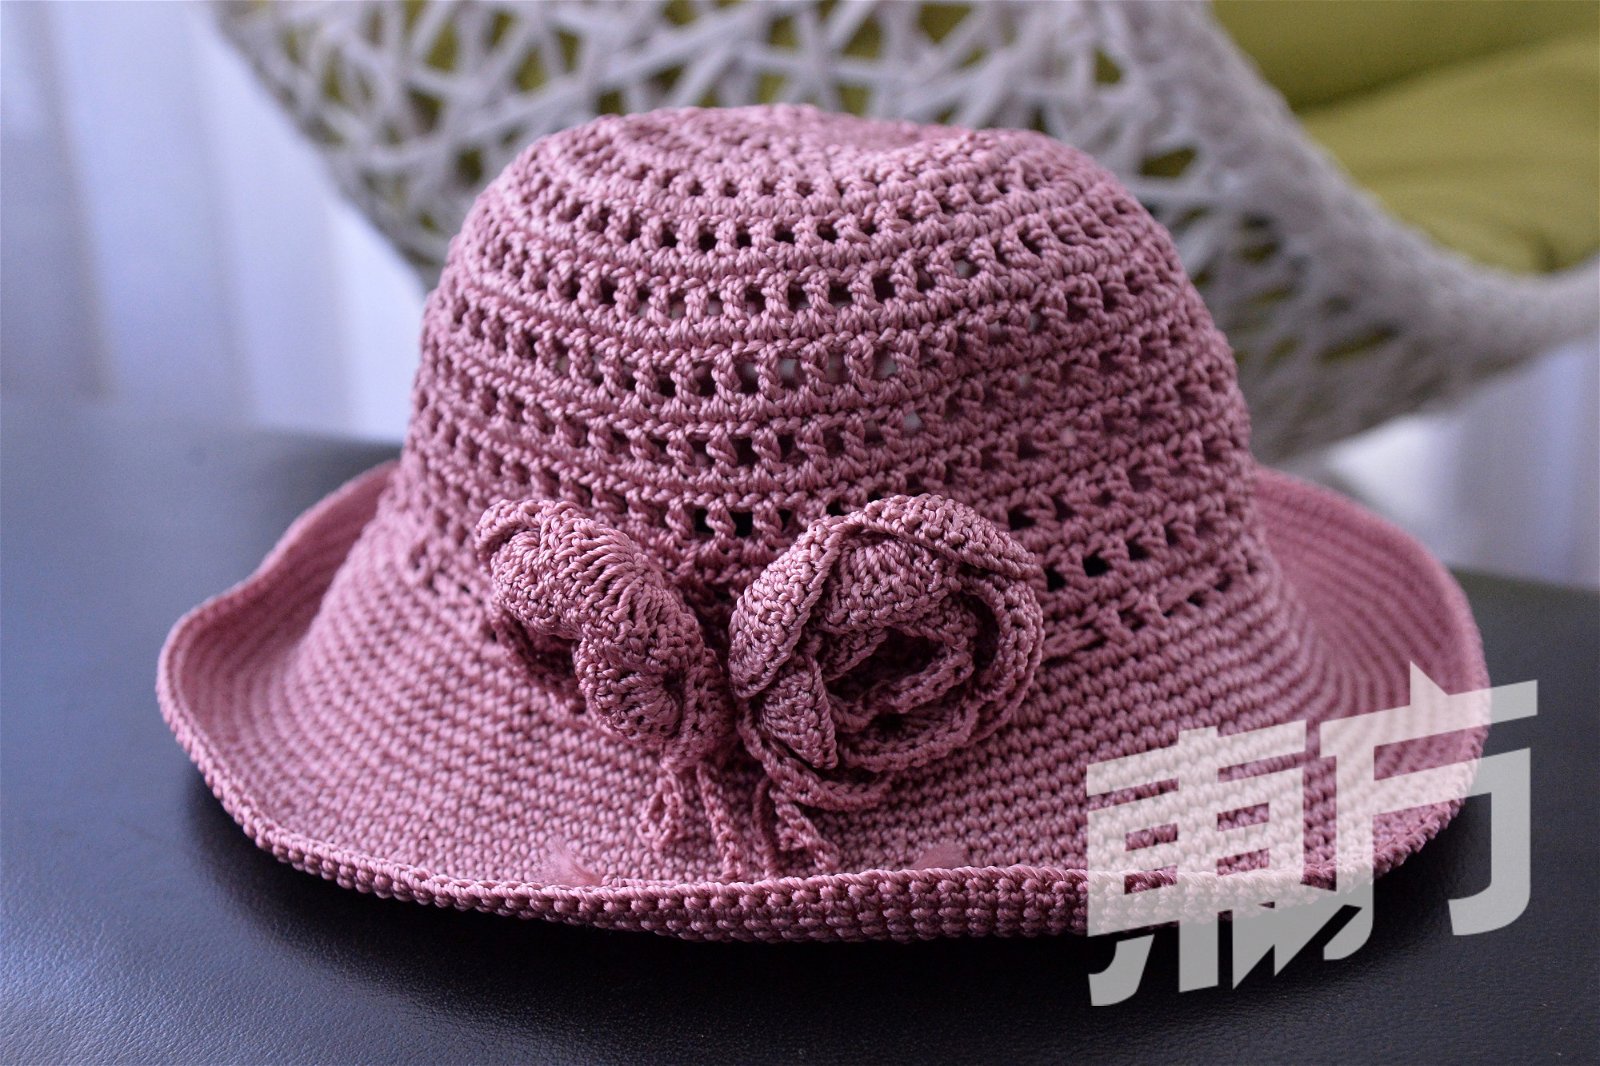 在循人中学日语协会开班授课后，不仅学生迷上编织，也吸引了一些老师接触编织。其中一位老师在学习编织后，制作了一顶帽子送给罗翎，让她欣喜不已。